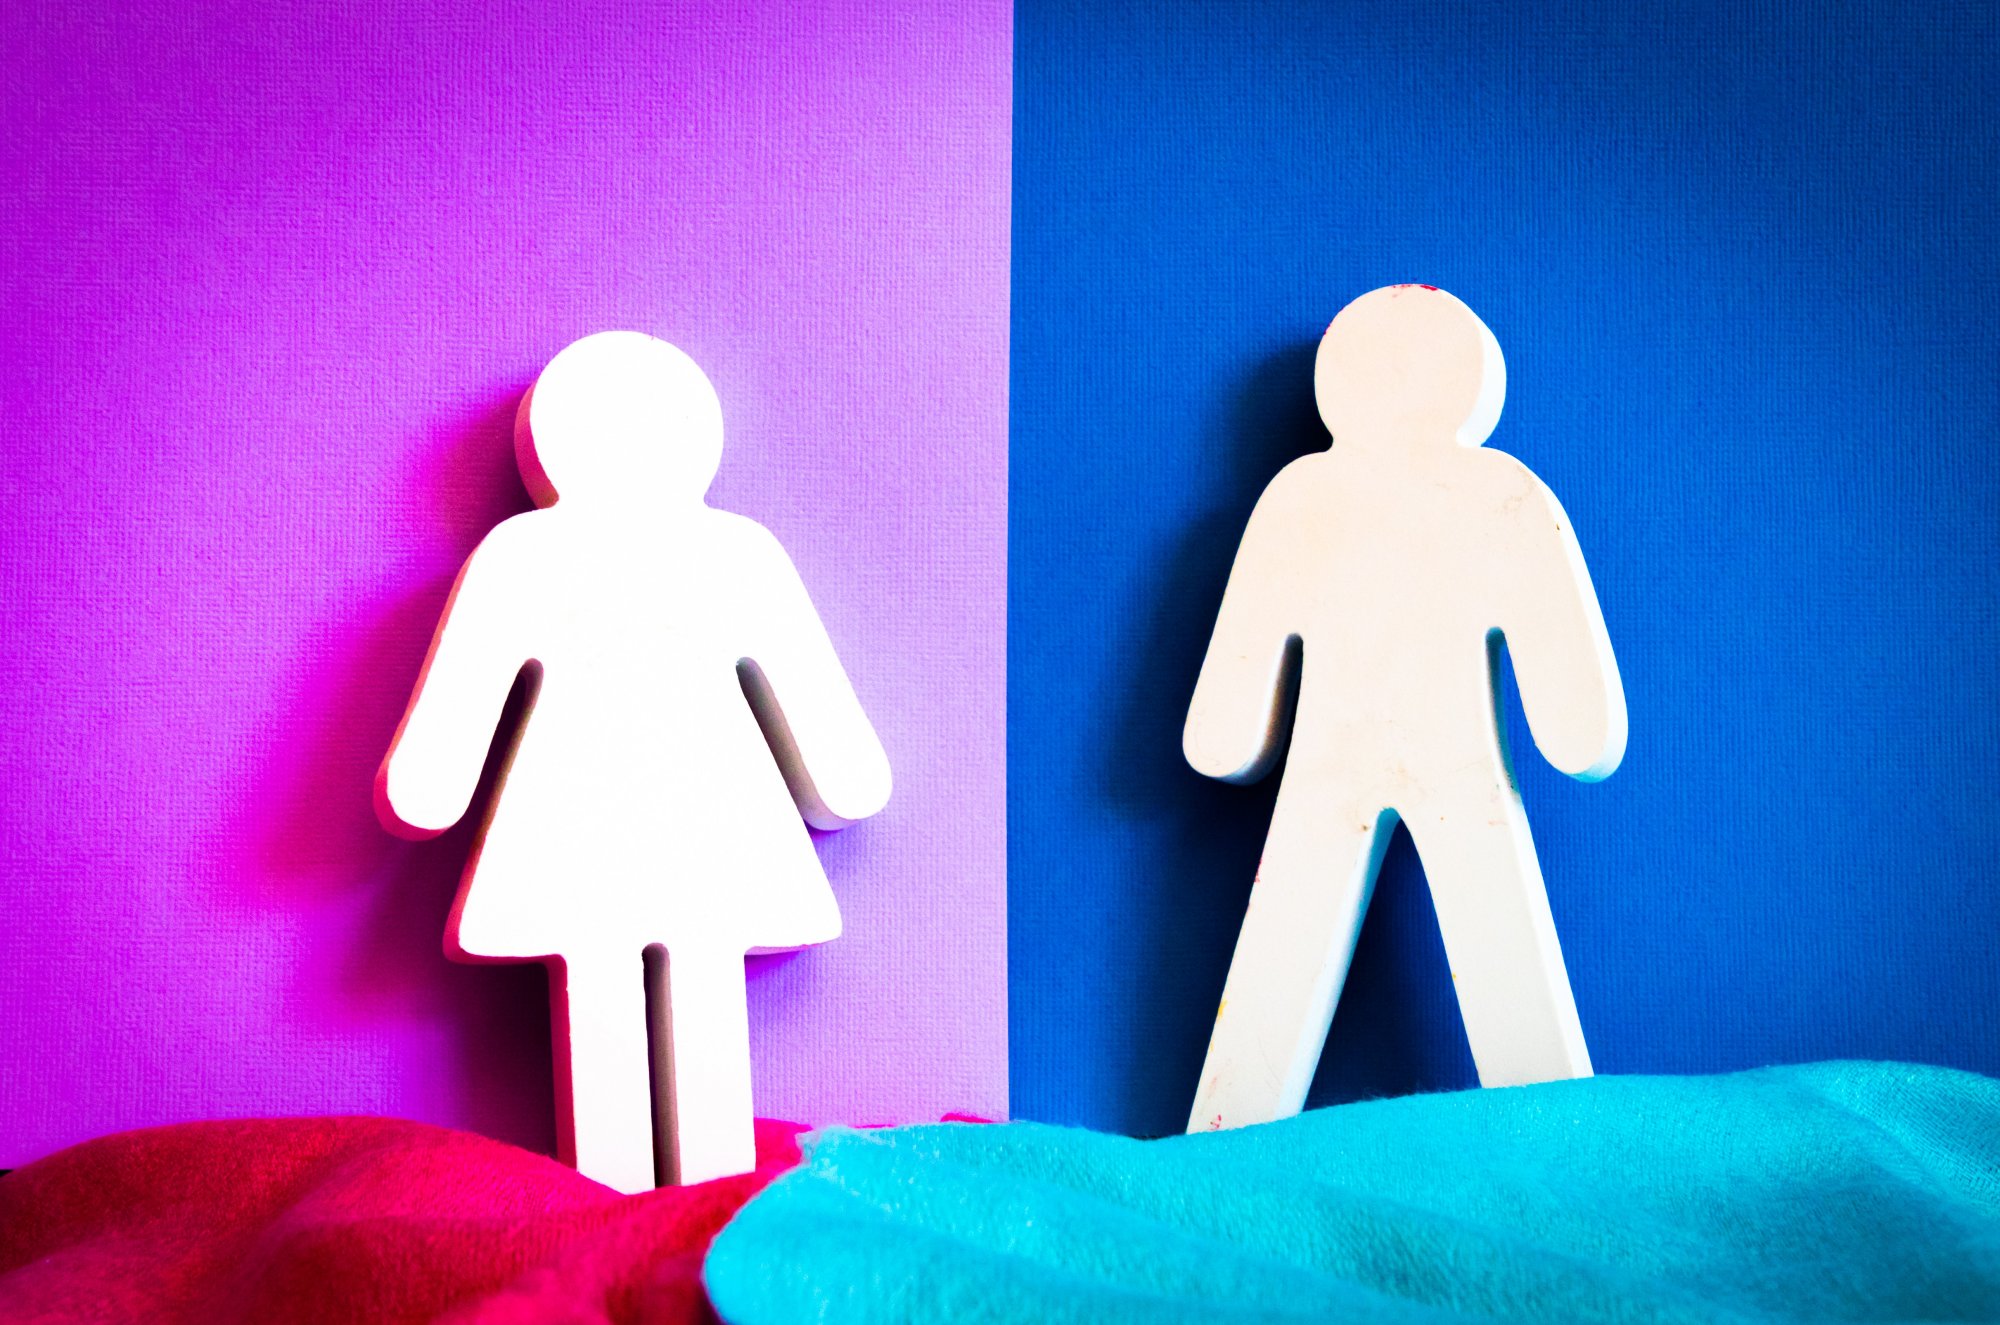 Προκατειλημμένο με τις γυναίκες το 50% των ανδρών – Η έμφυλη ισότητα δεν είναι αυτονόητη ούτε για τους νέους